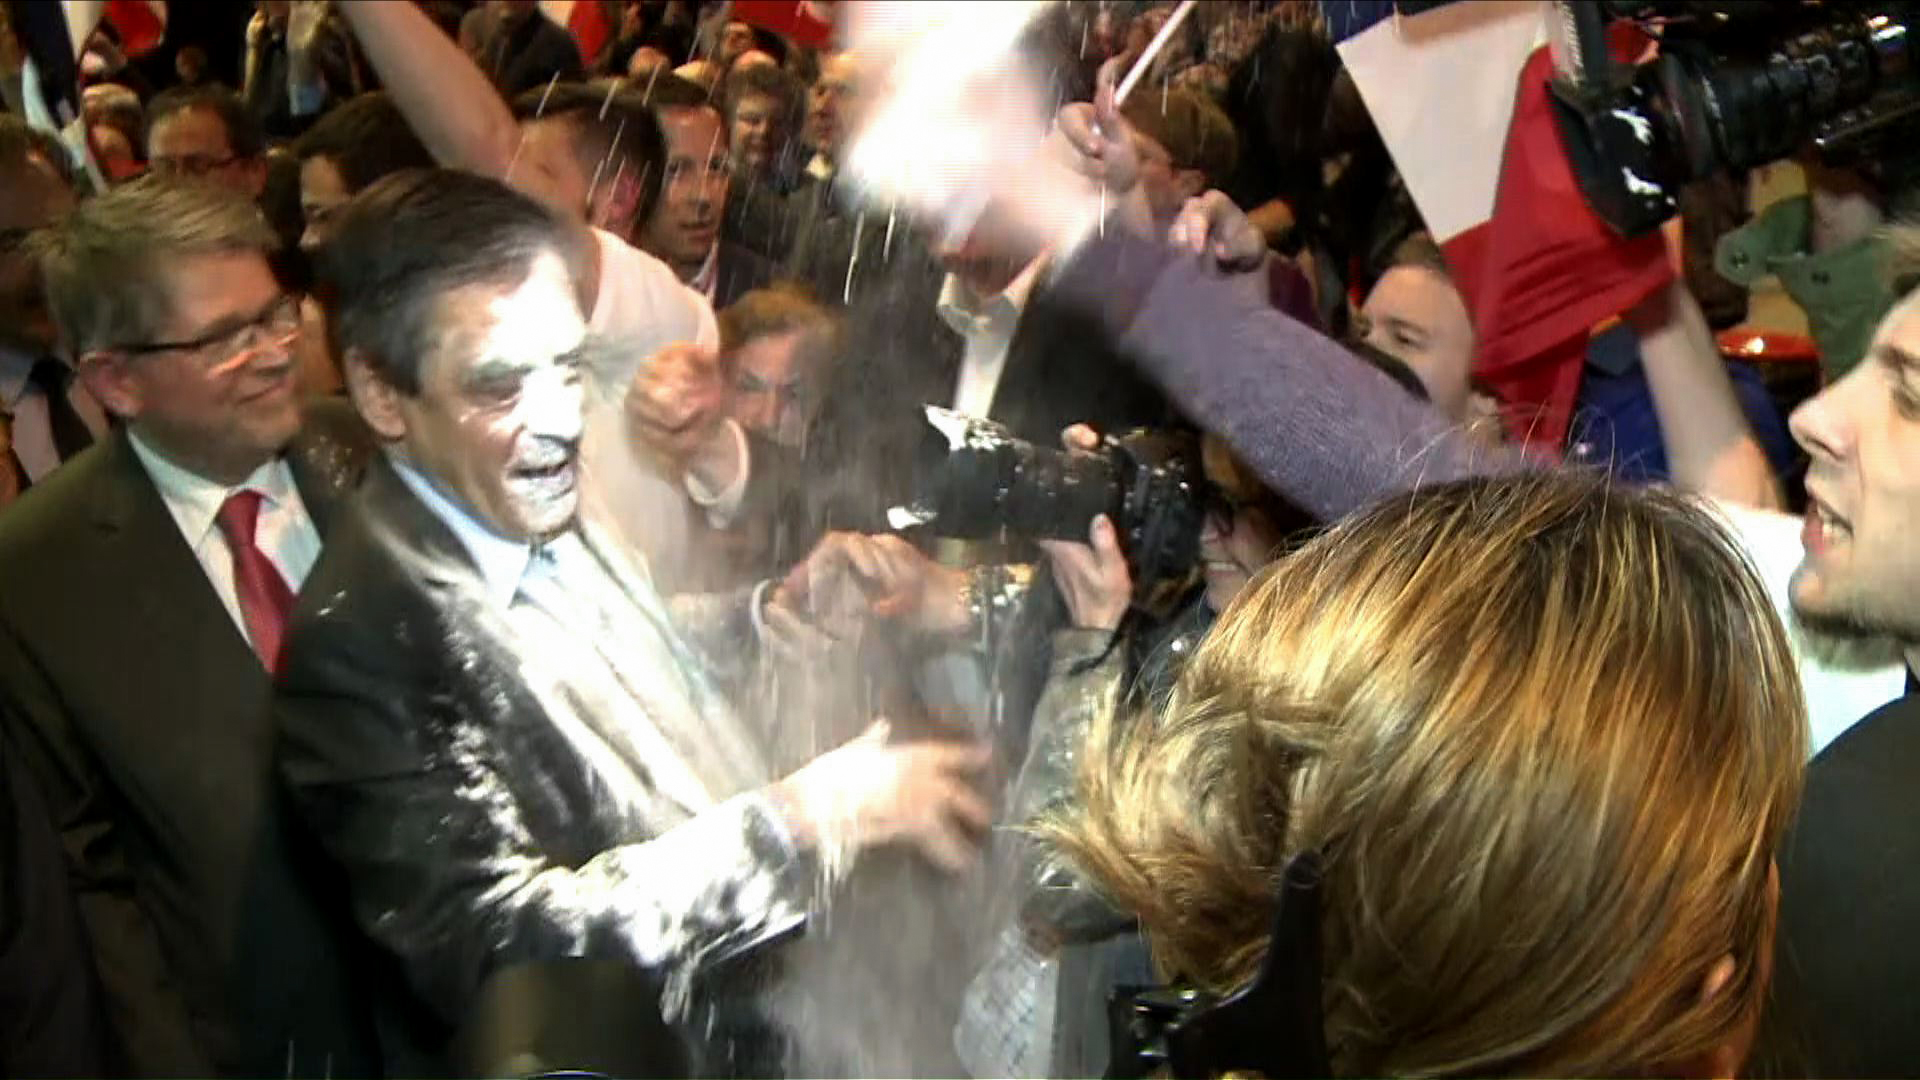 François Fillon atingido com farinha à chegada de comício em Estrasburgo